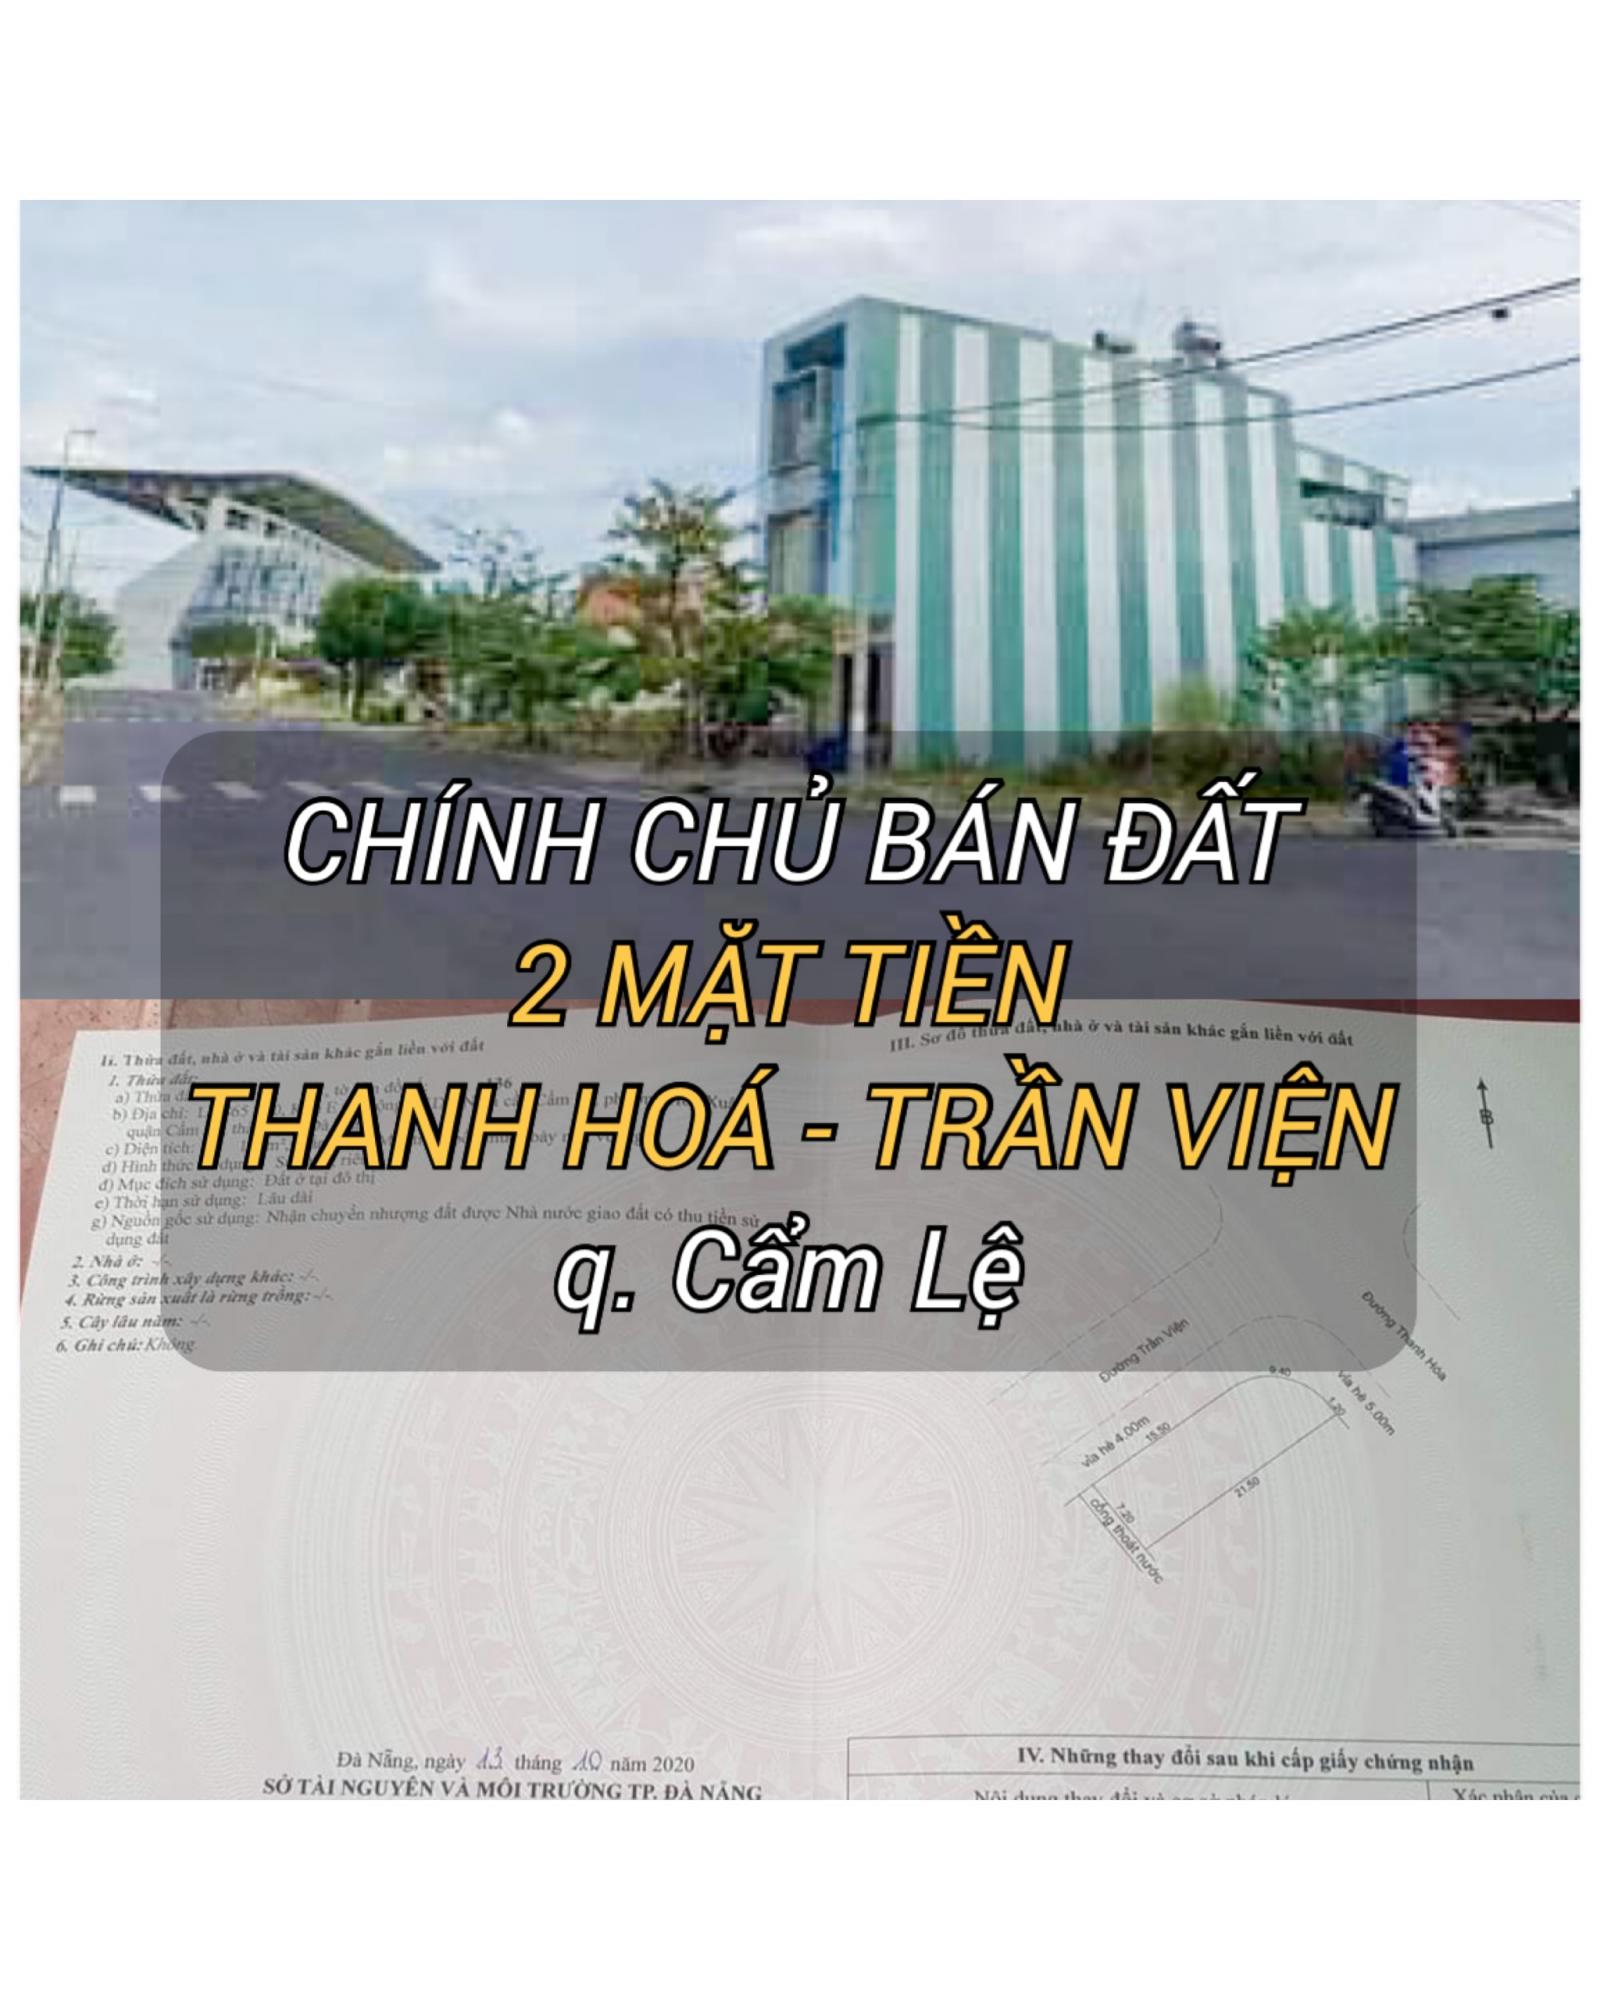 Chính chủ cần bán lô đất 2 mặt tiền đường Thanh Hóa - Trần Viện, Q. Cẩm Lệ, Đà Nẵng.